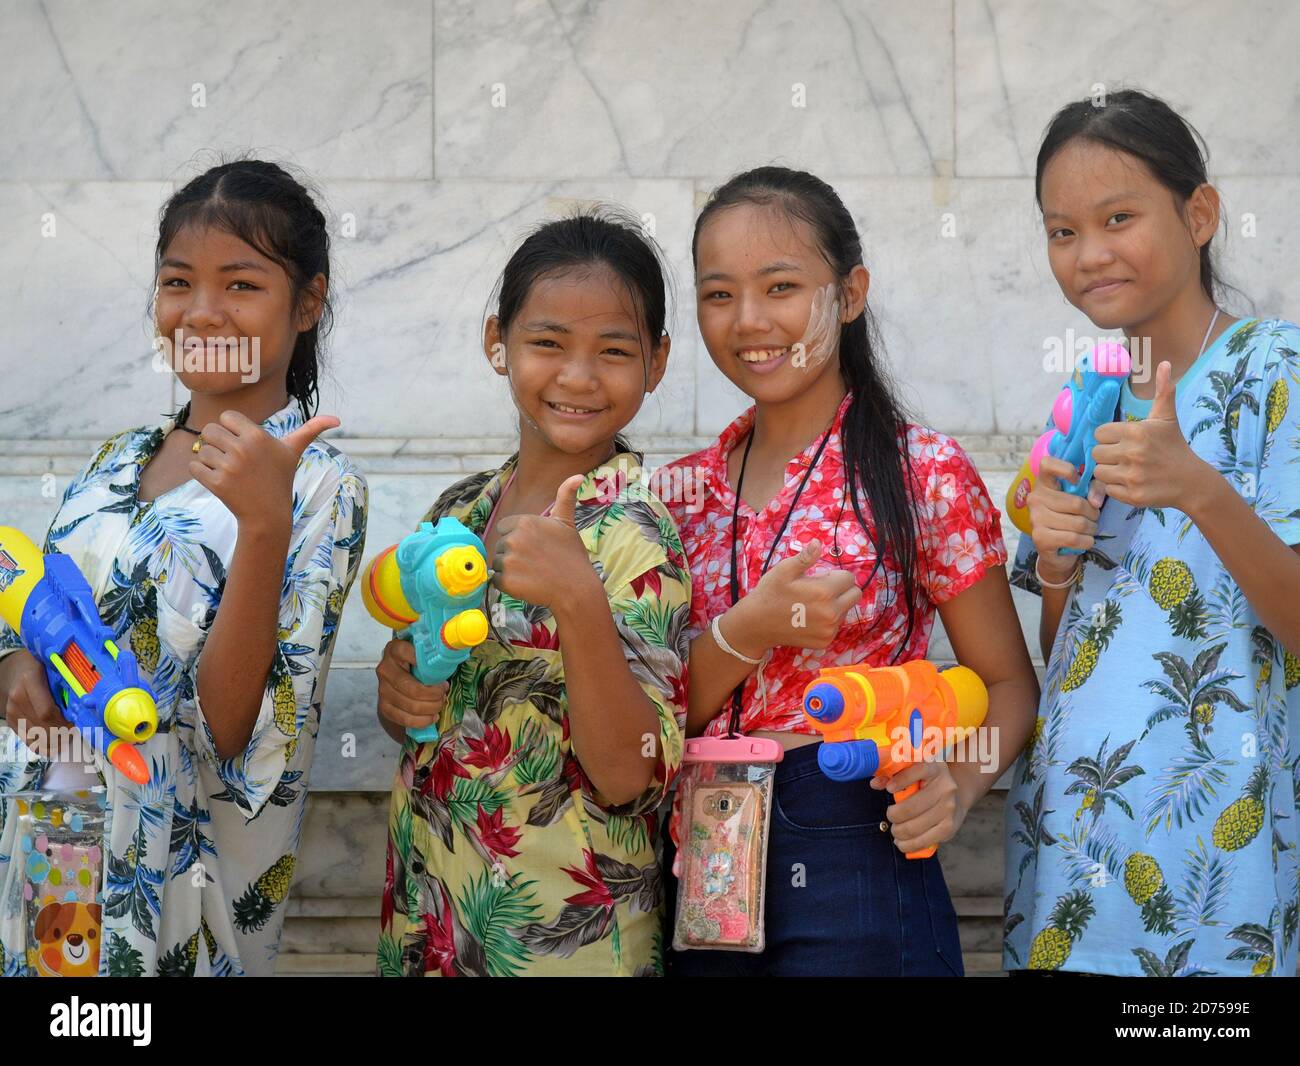 Quatre jeunes filles pré-adolescentes de Bangkok portent des pistolets à eau en plastique, donnent le pouce et le sourire pour la caméra pendant le festival de l'eau de printemps Songkran. Banque D'Images